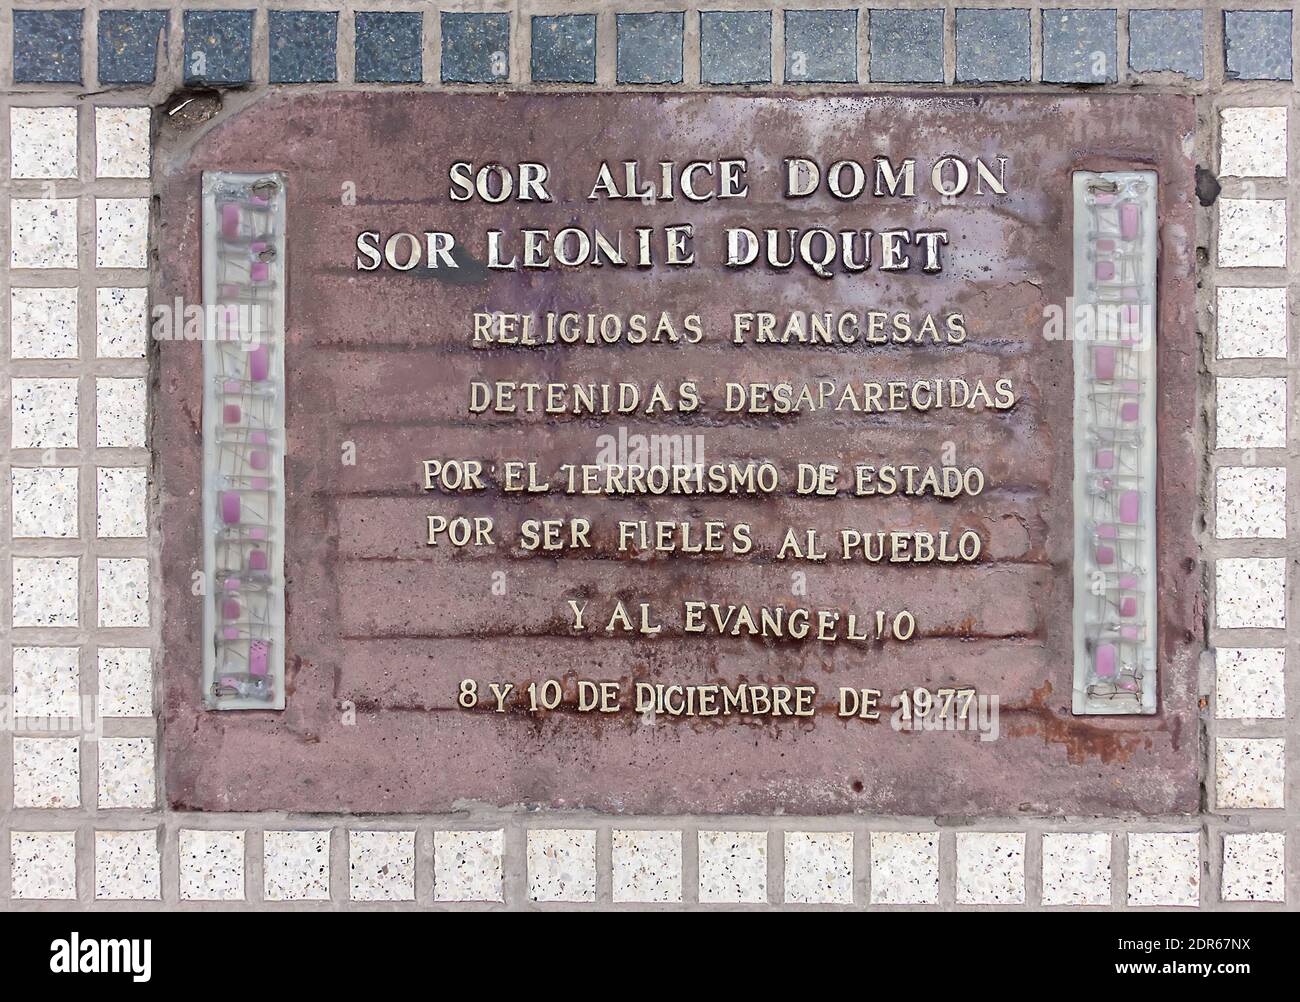 Placa Buenos Aires, Argentina en homenaje a las Hermanas Alice Bomon y Leonie Duquet monjas francesas secuestradas y desaparecidas por el terrorismo de Estado argentino Foto de stock